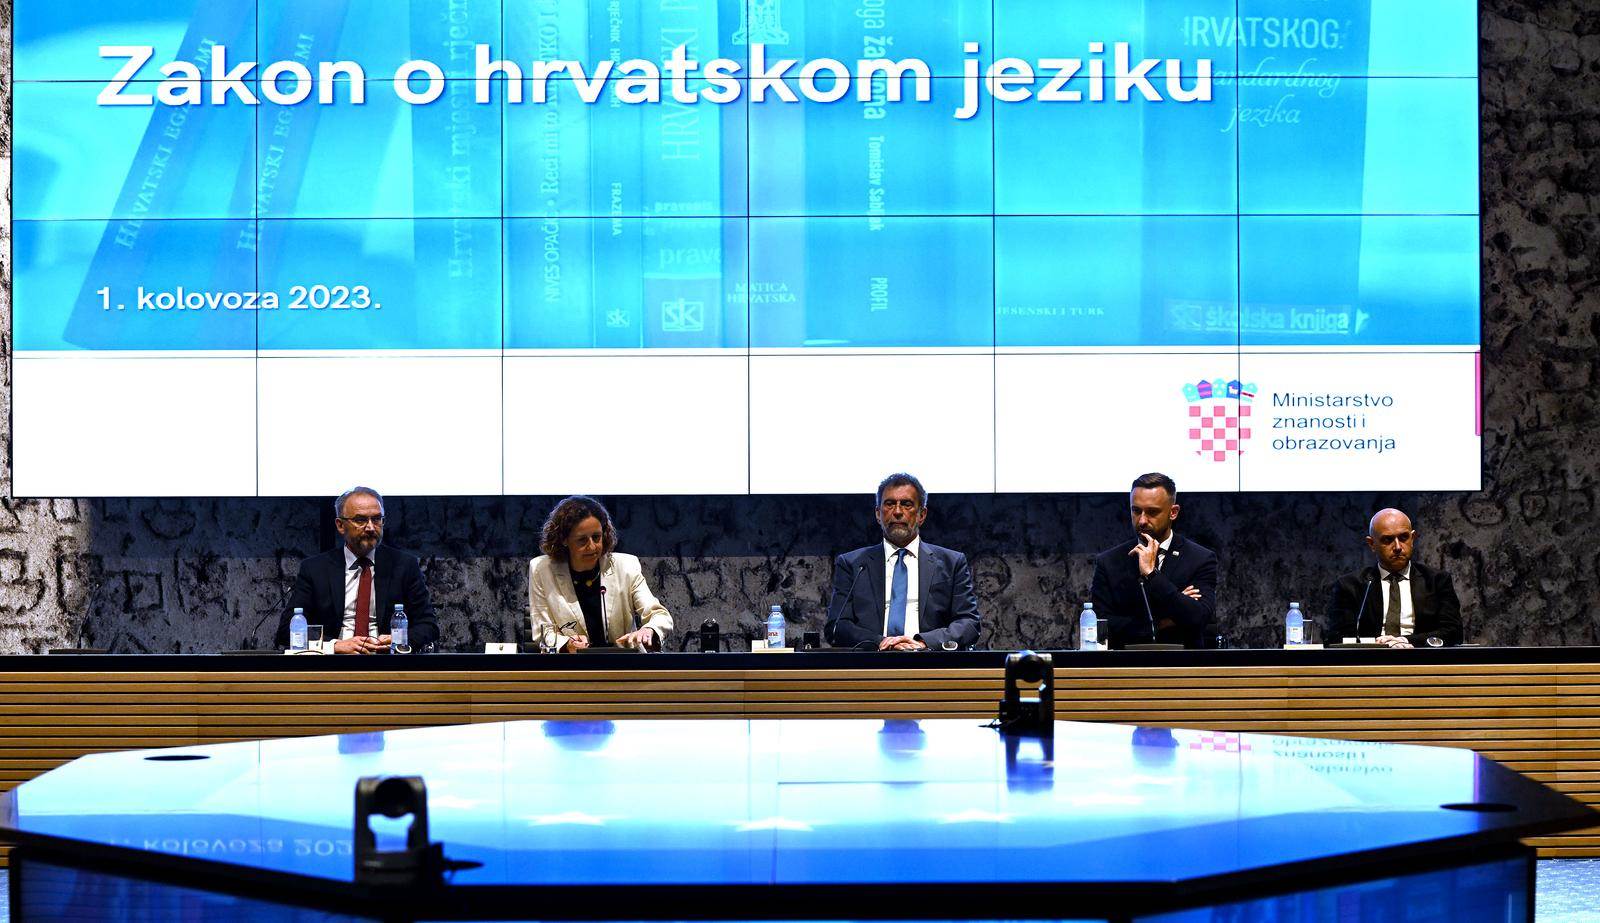  Predstavljanje zakona o hrvatskom jeziku u Vladi 